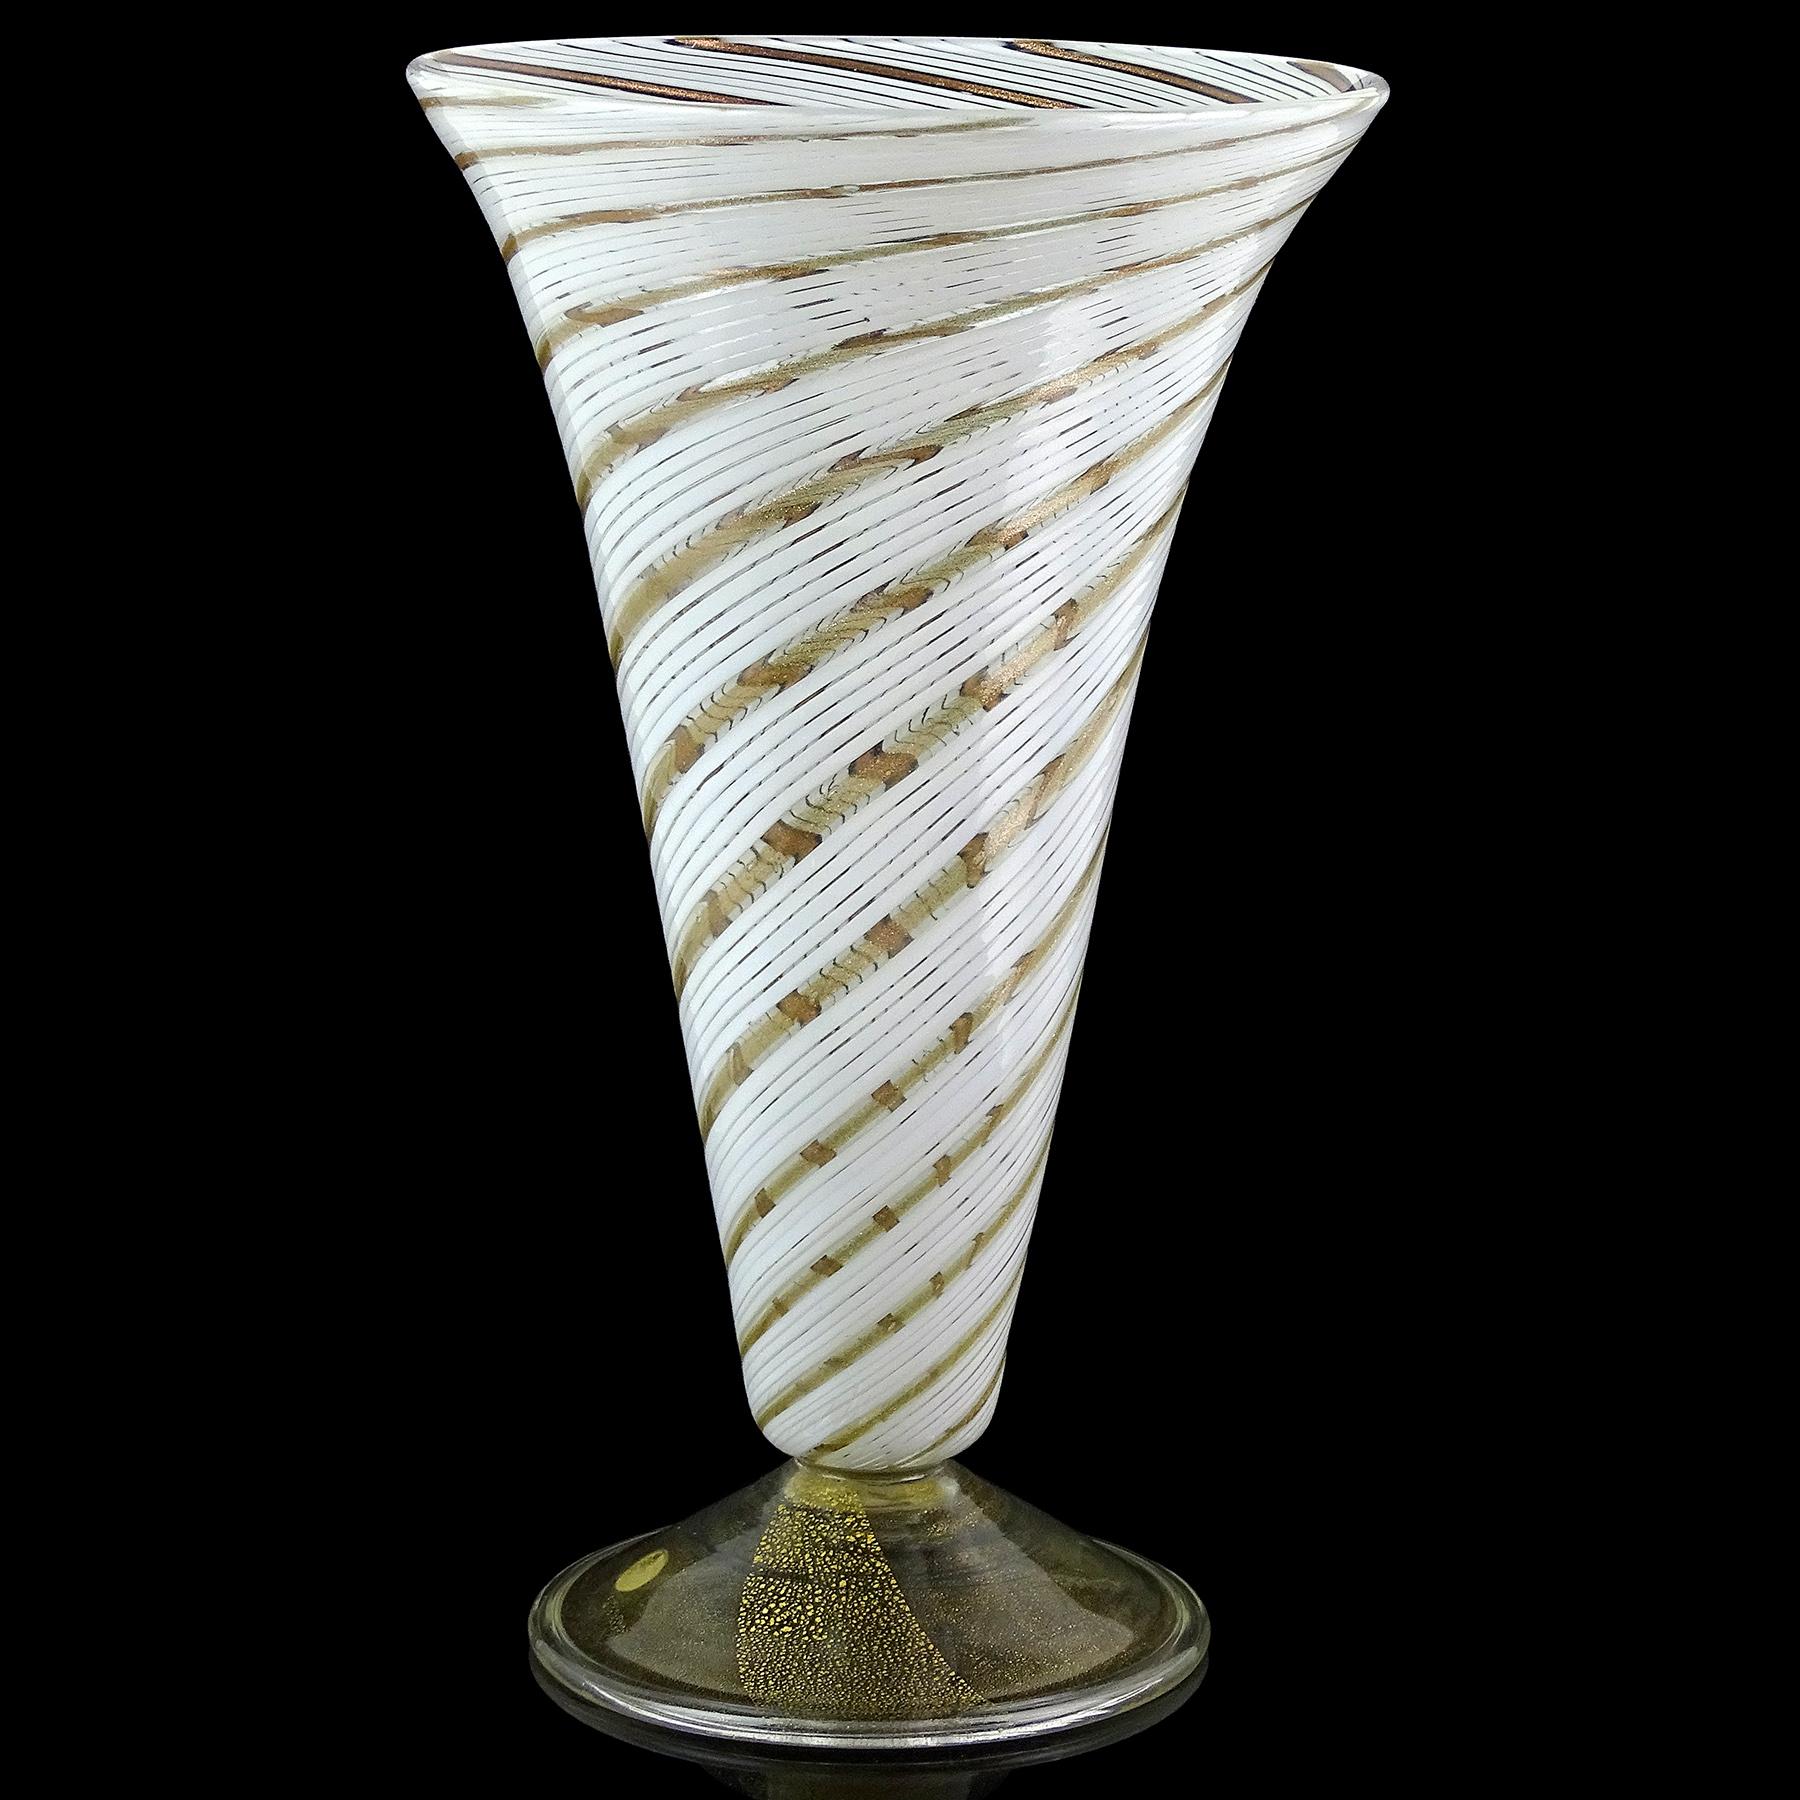 Schöne Vintage Murano mundgeblasen wirbelnden weißen und Aventurin Flecken italienische Kunst Glas fußte Blumenvase. Er wurde der Firma Arte Vetraria Muranese (A.VE.M.) zugeschrieben und ist im Stil des Designers Dino Martens gestaltet. Die Vase ist